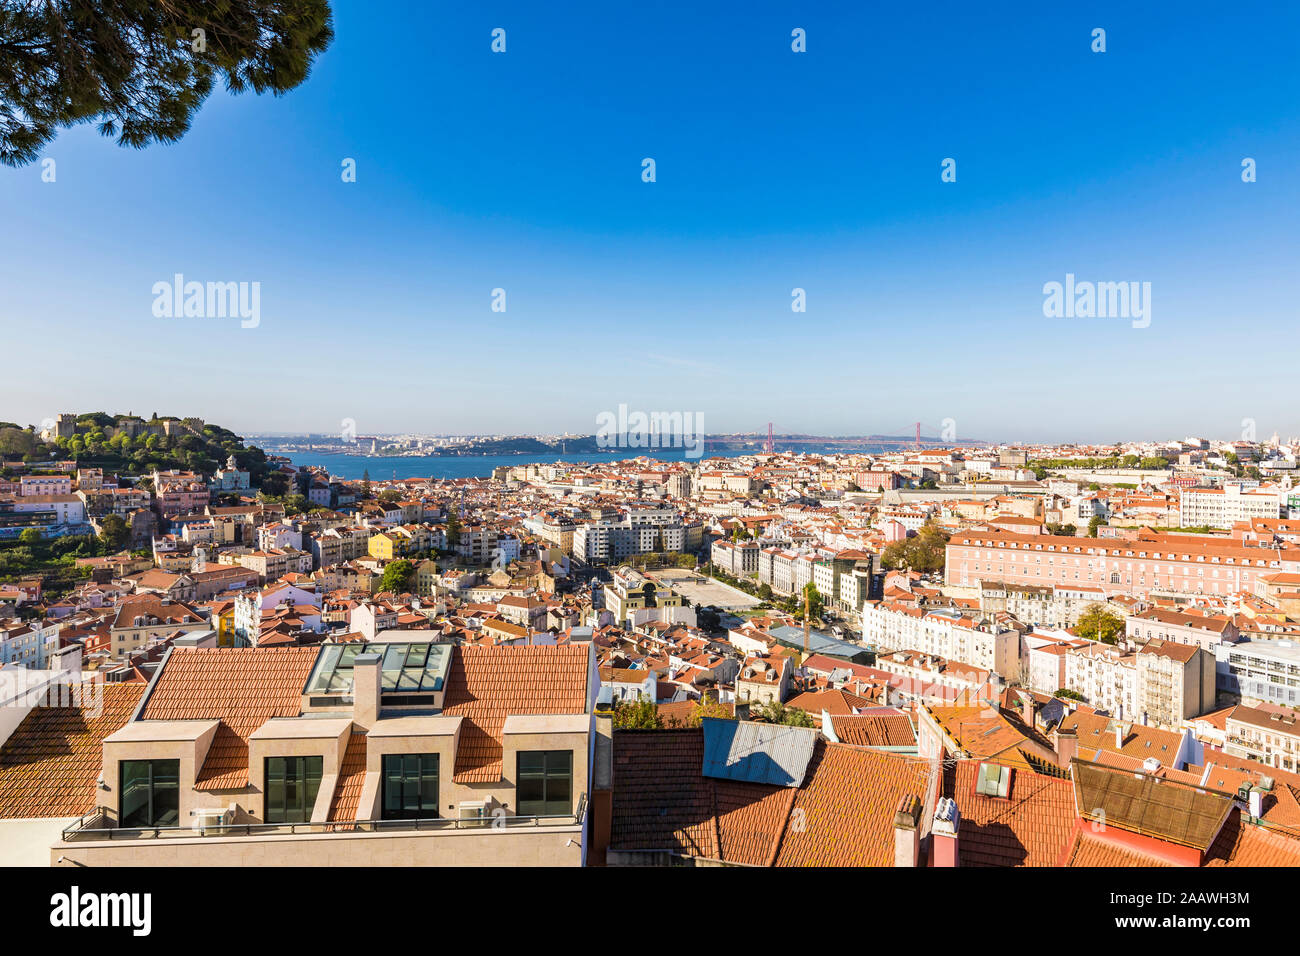 Cityscape contre ciel bleu clair au cours de journée ensoleillée à Lisbonne, Portugal Banque D'Images